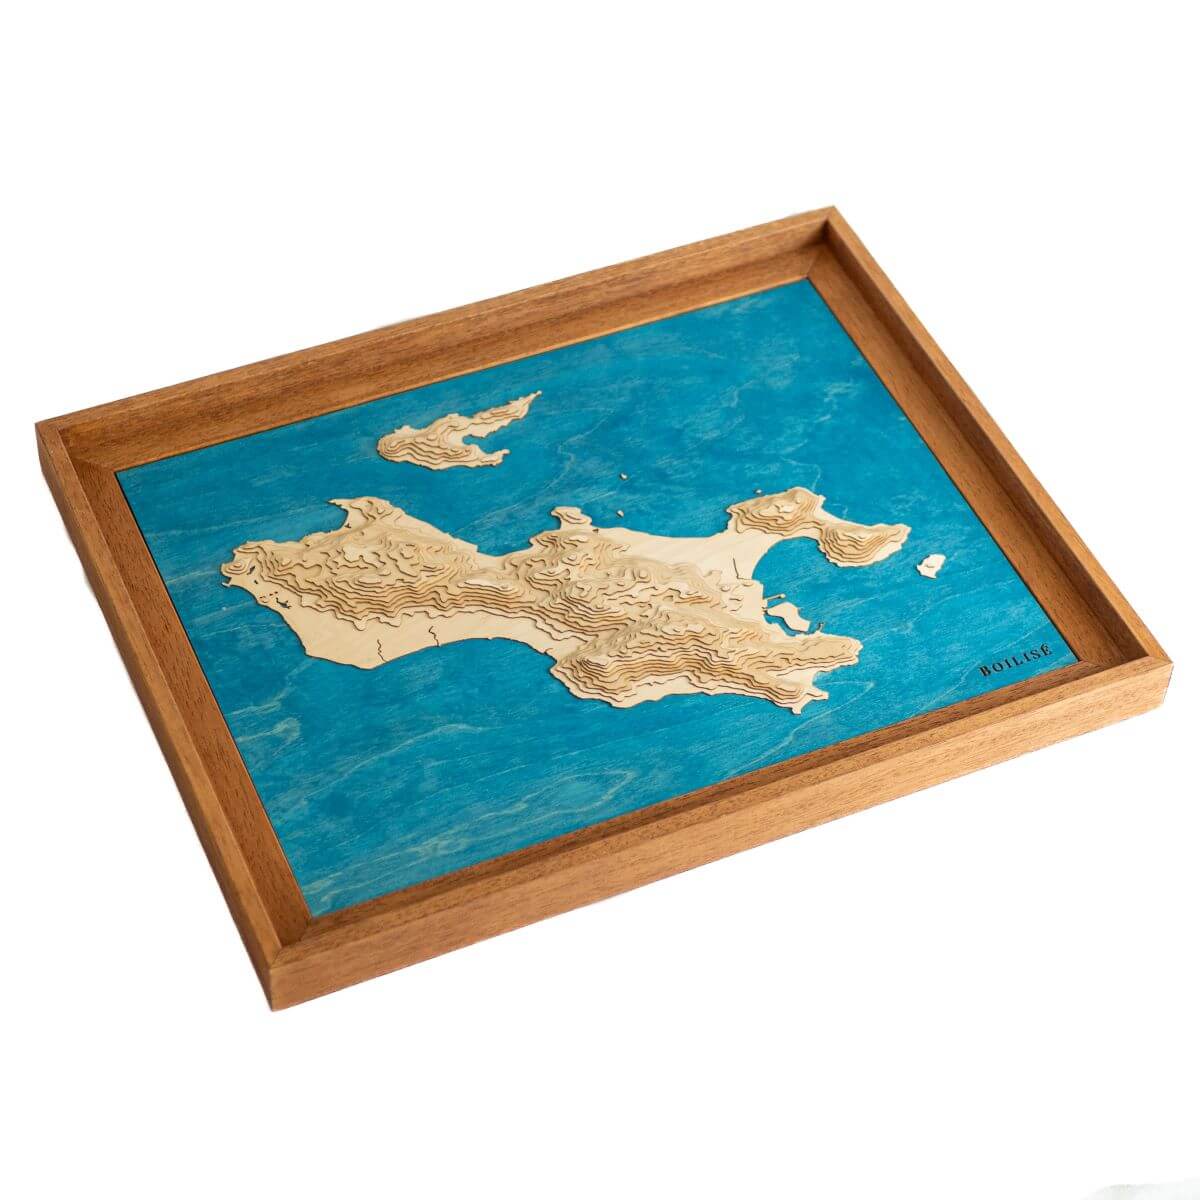 Déco naturelle avec la carte de Praslin (Seychelles) fabriquée en France de manière artisanale